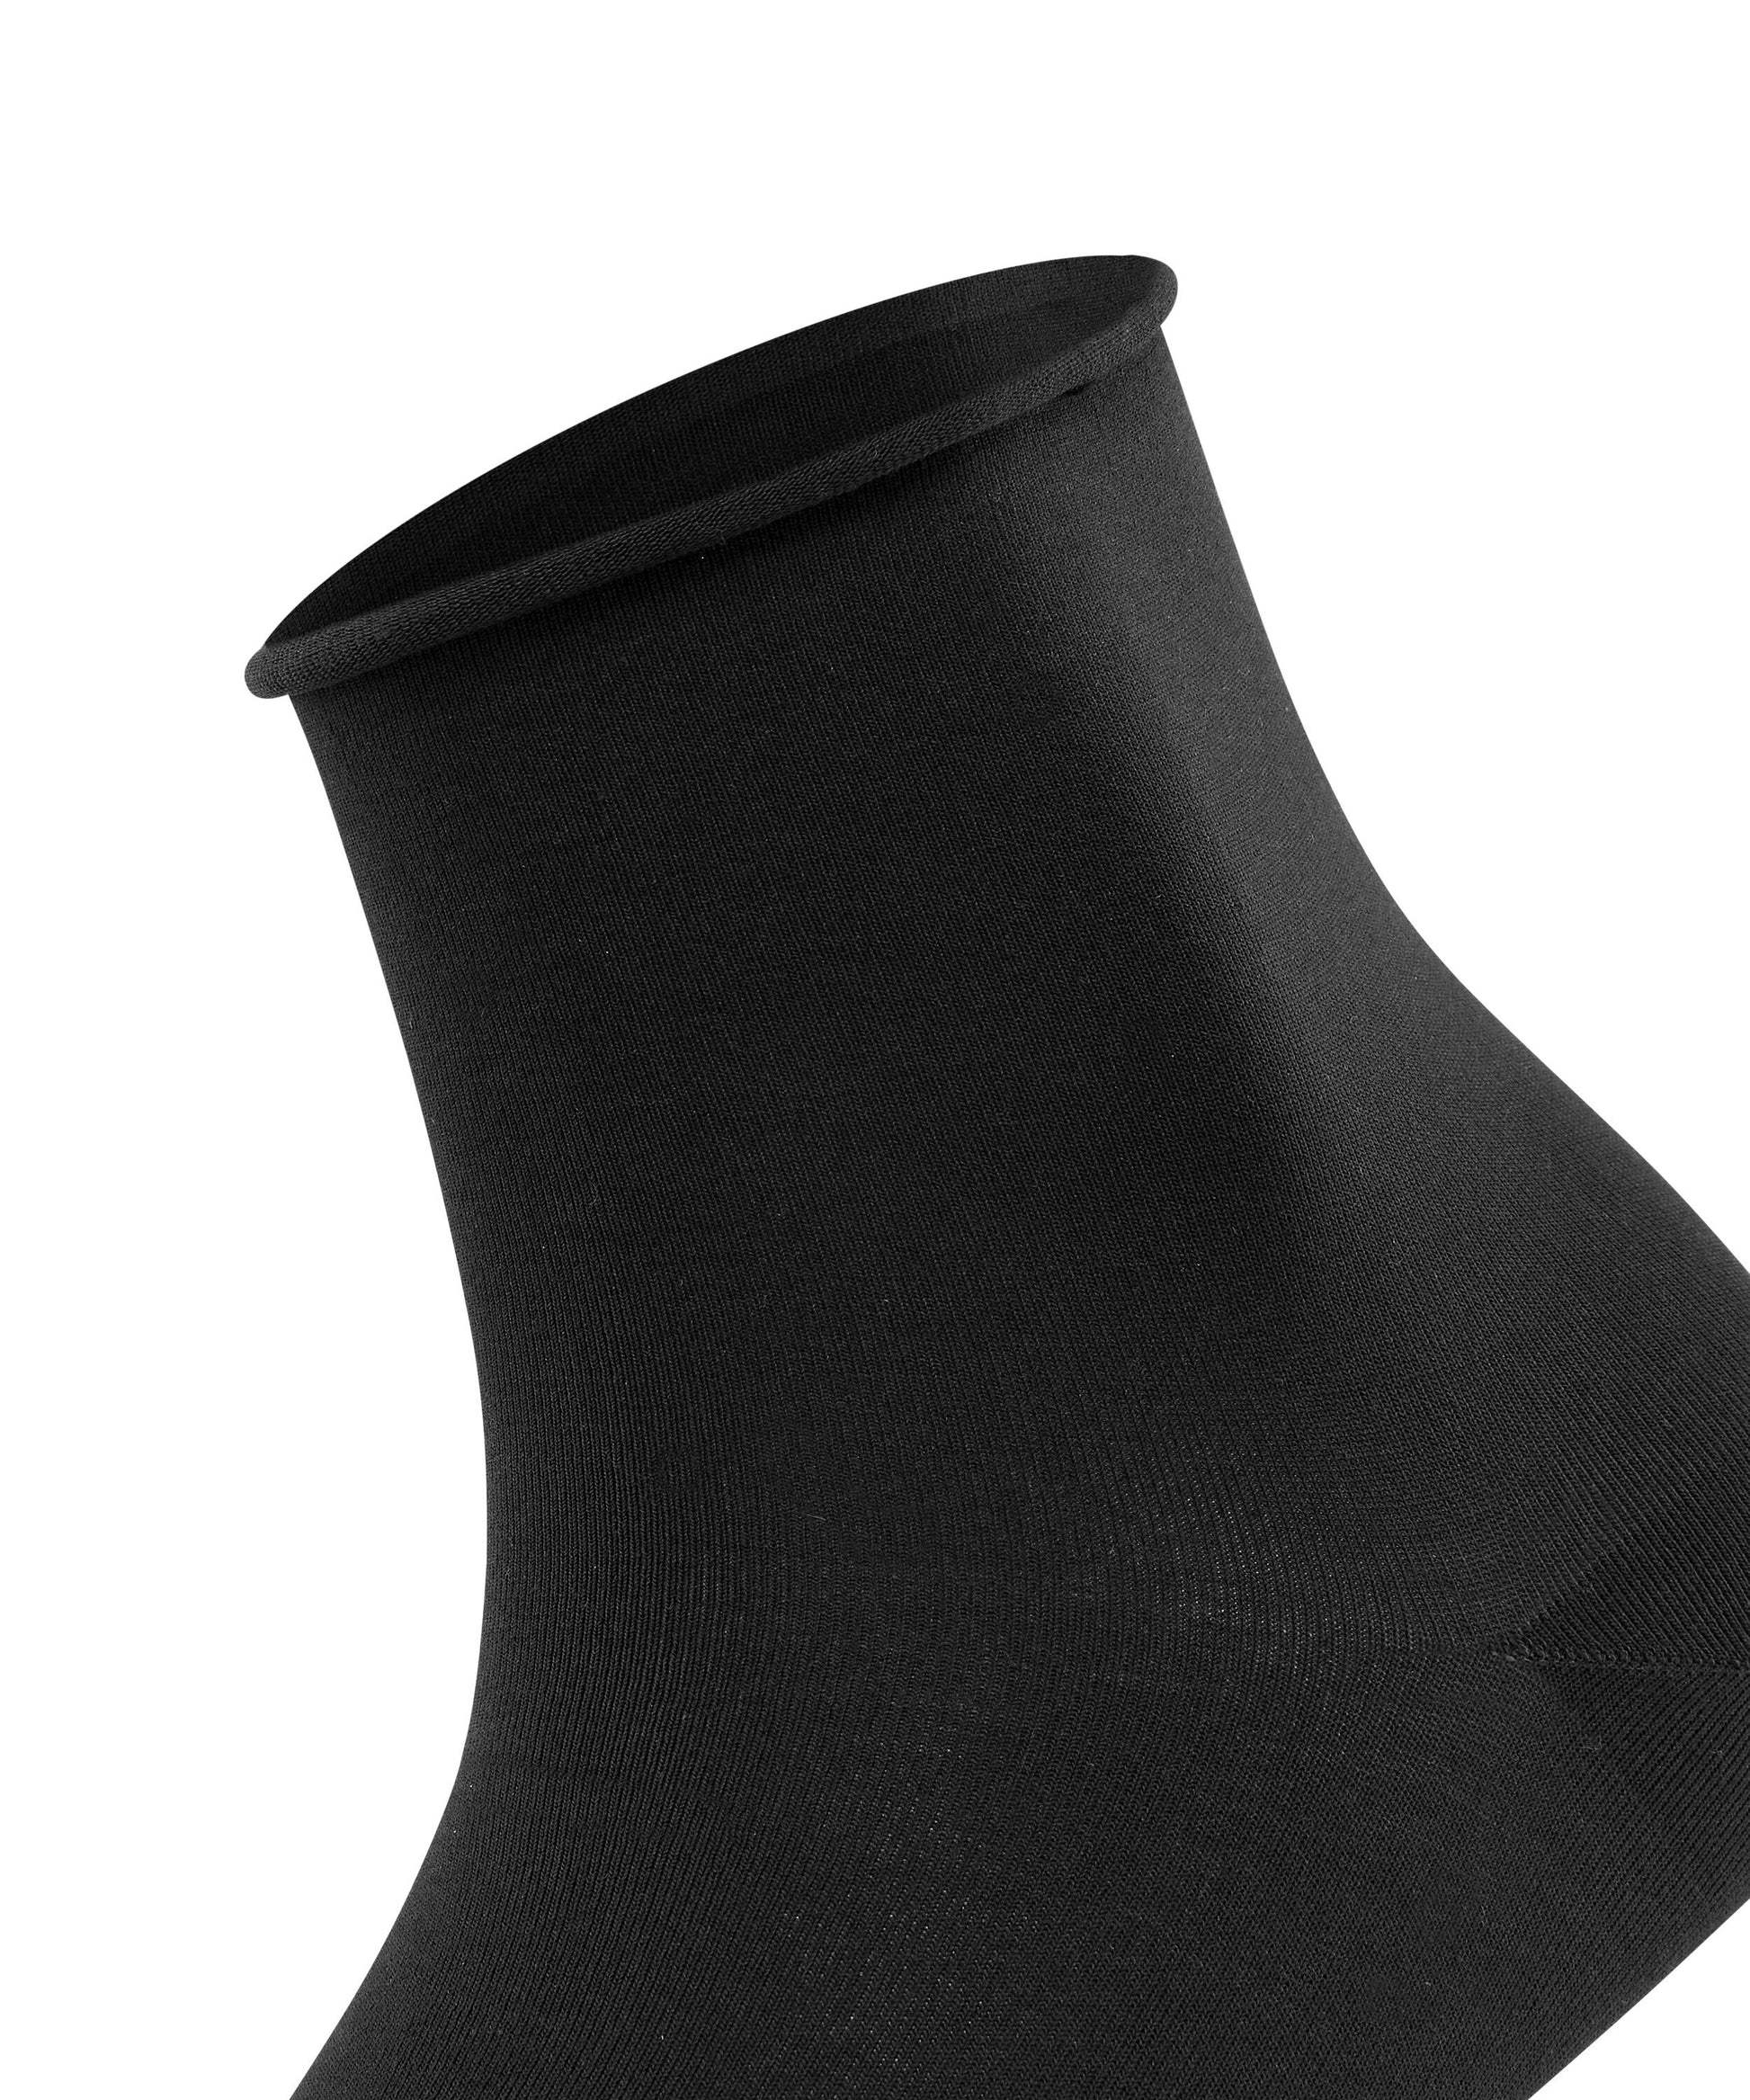 Socken Cotton Touch (Black)